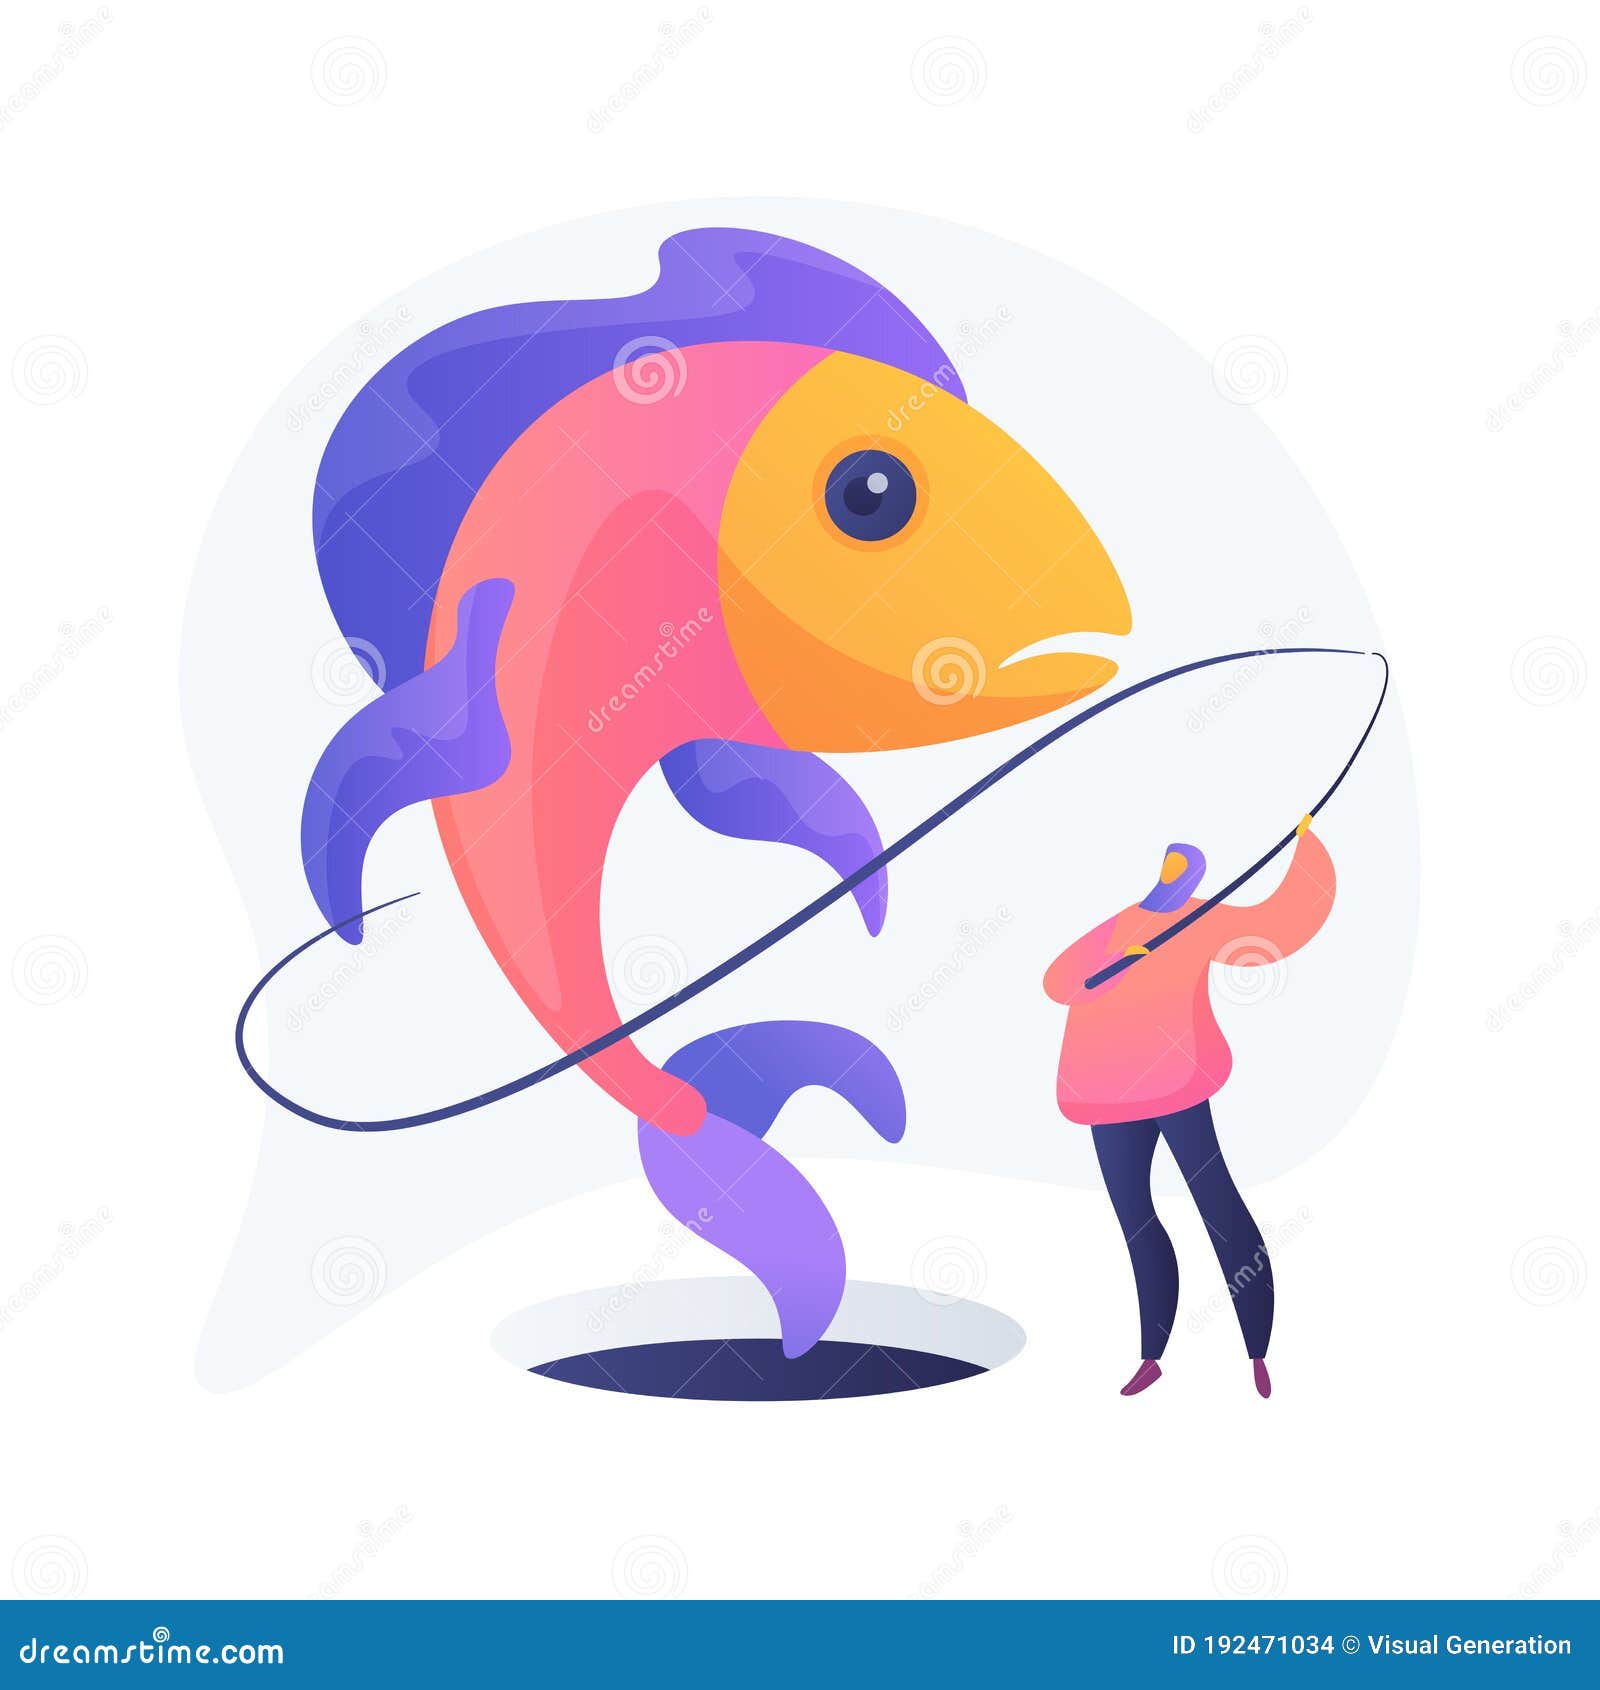 Fishing Tips Stock Illustrations – 69 Fishing Tips Stock Illustrations,  Vectors & Clipart - Dreamstime